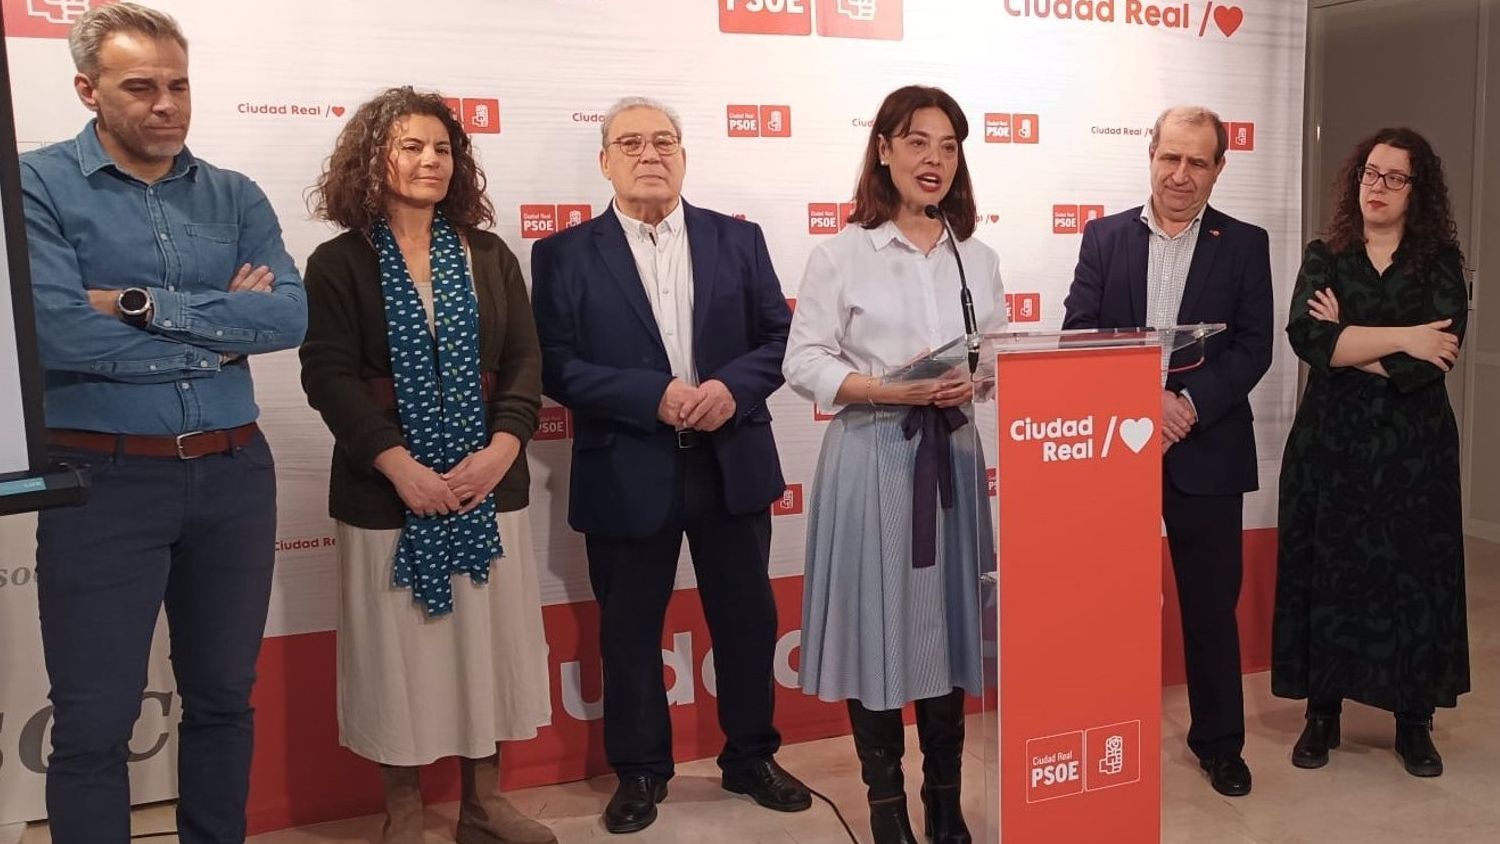 La candidata del PSOE a la Alcaldía de Ciudad Real, Pilar Zamora, durante la presentación de su lista.